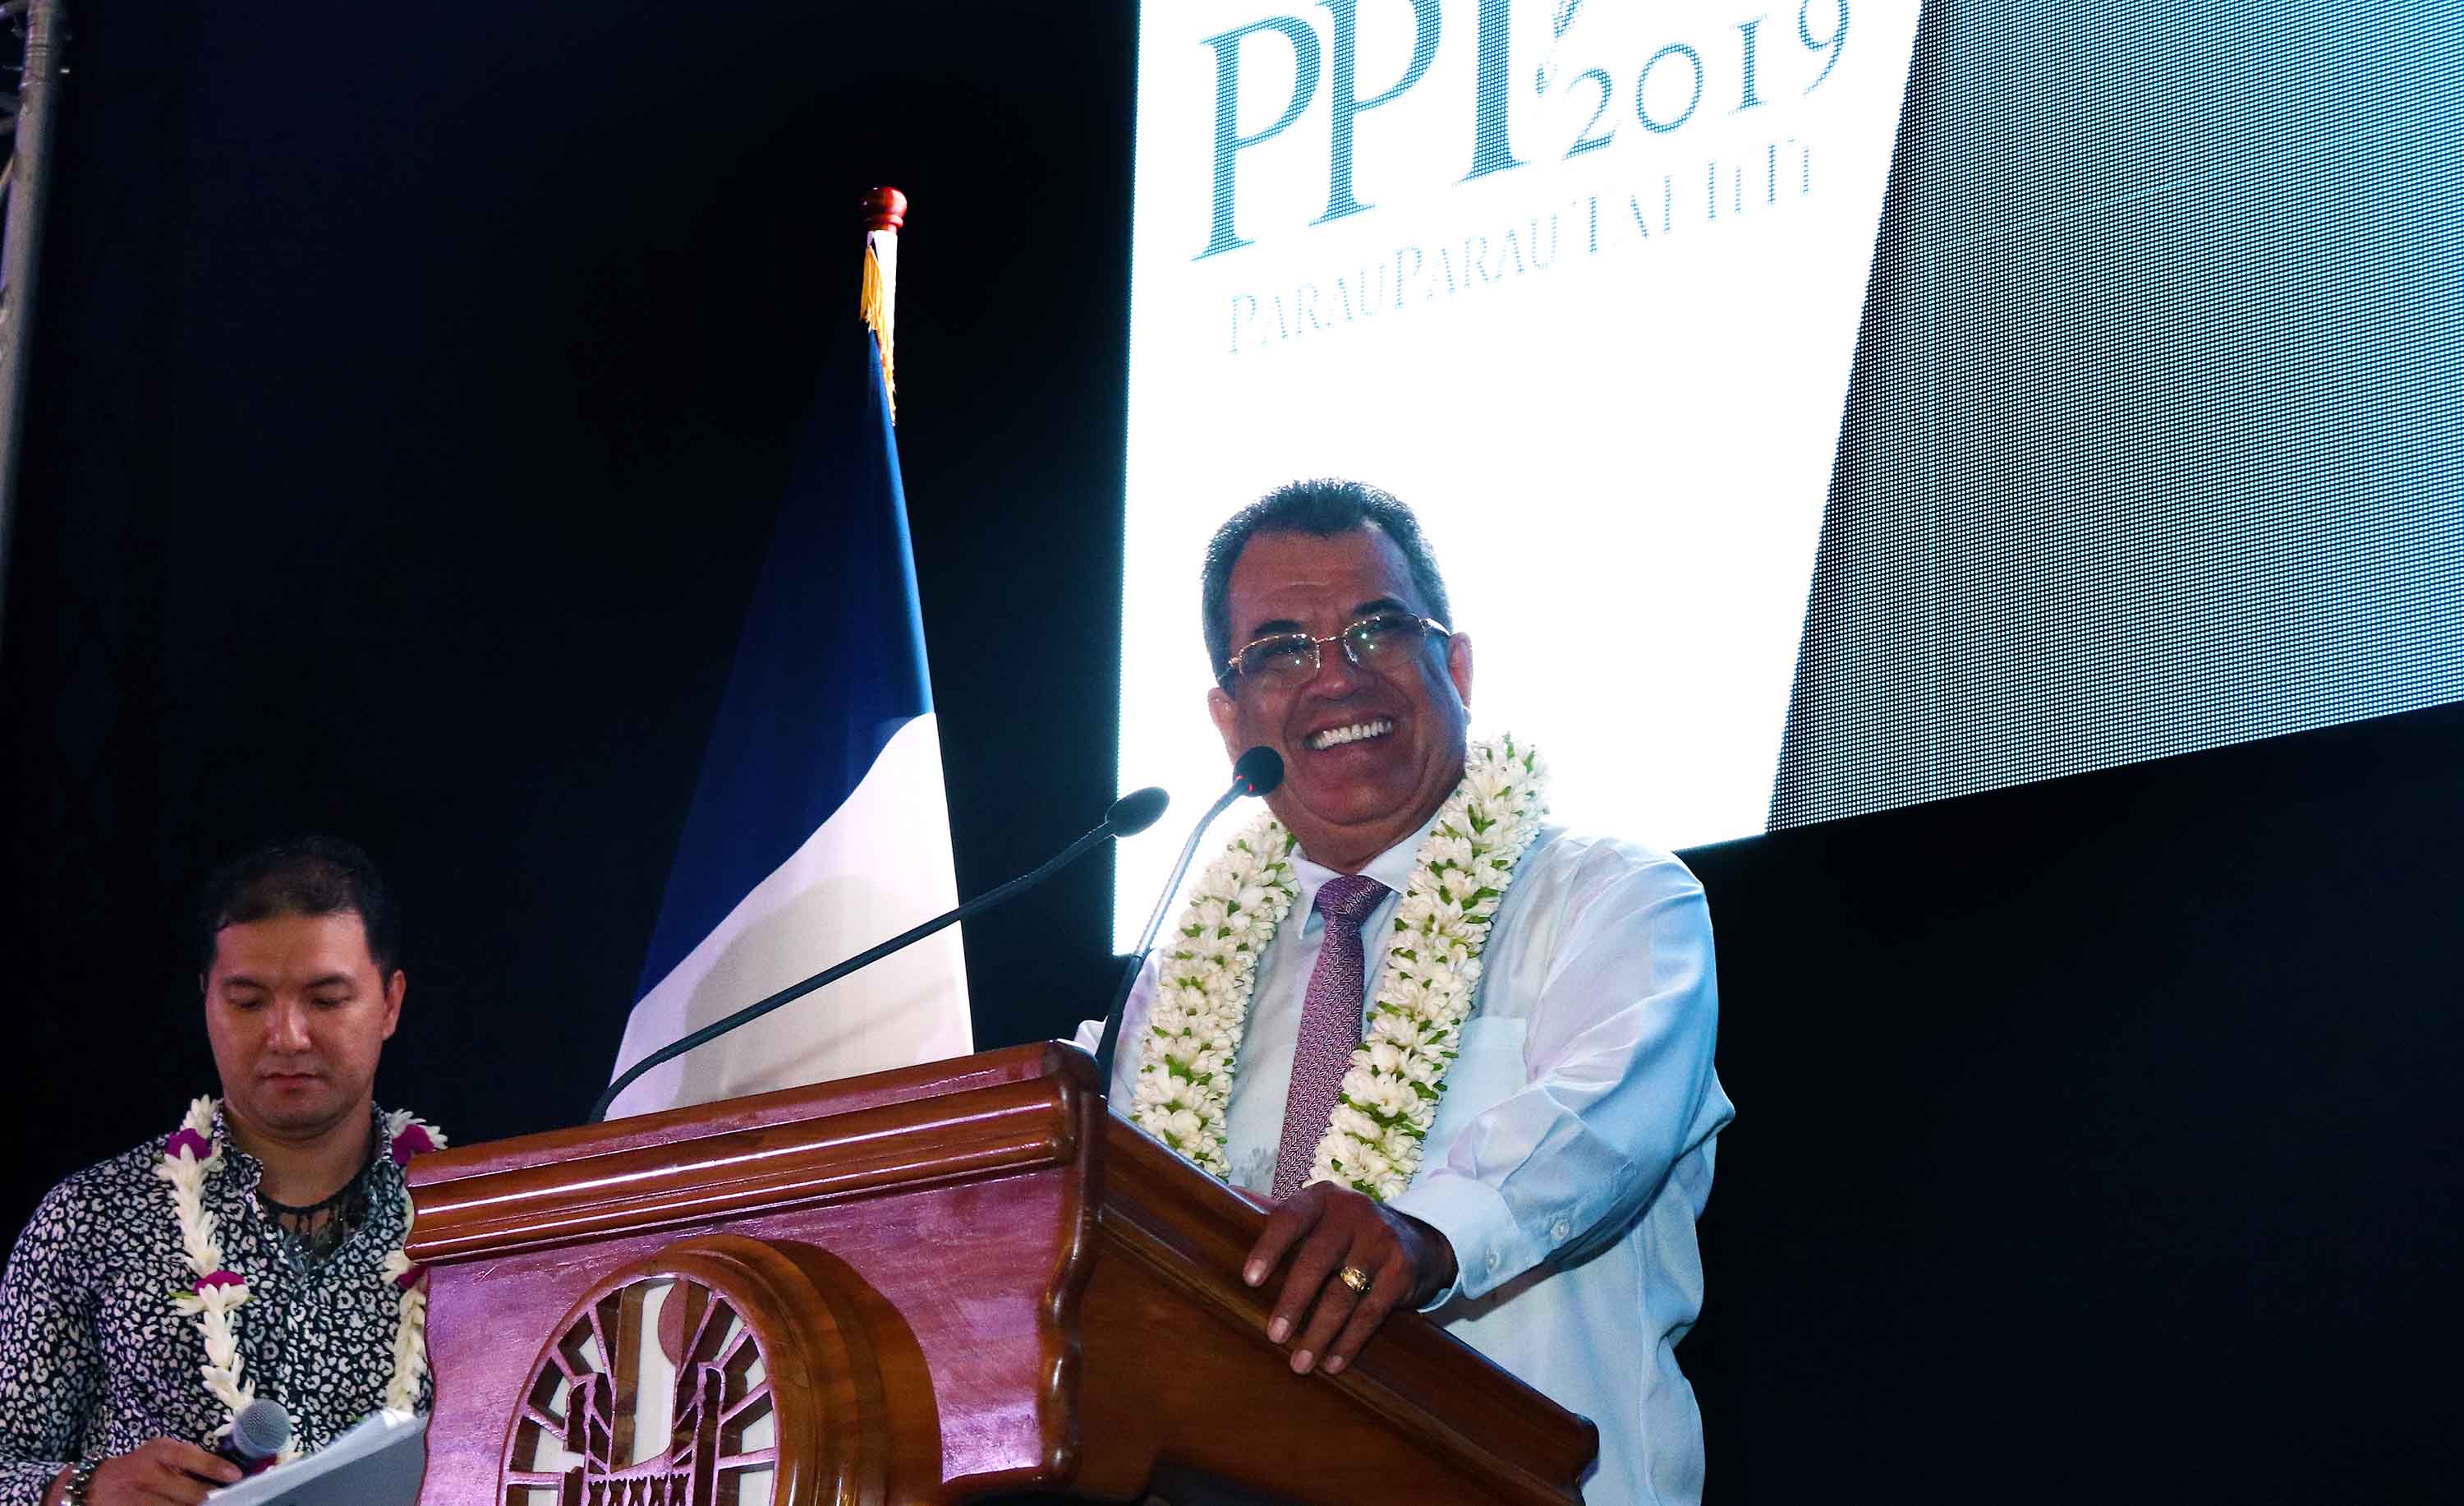 Edouard Fritch, président du Gouvernement de Polynésie, lors du discours d'ouverture du Parau Parau 2019 /crédit photo Tahiti Tourisme